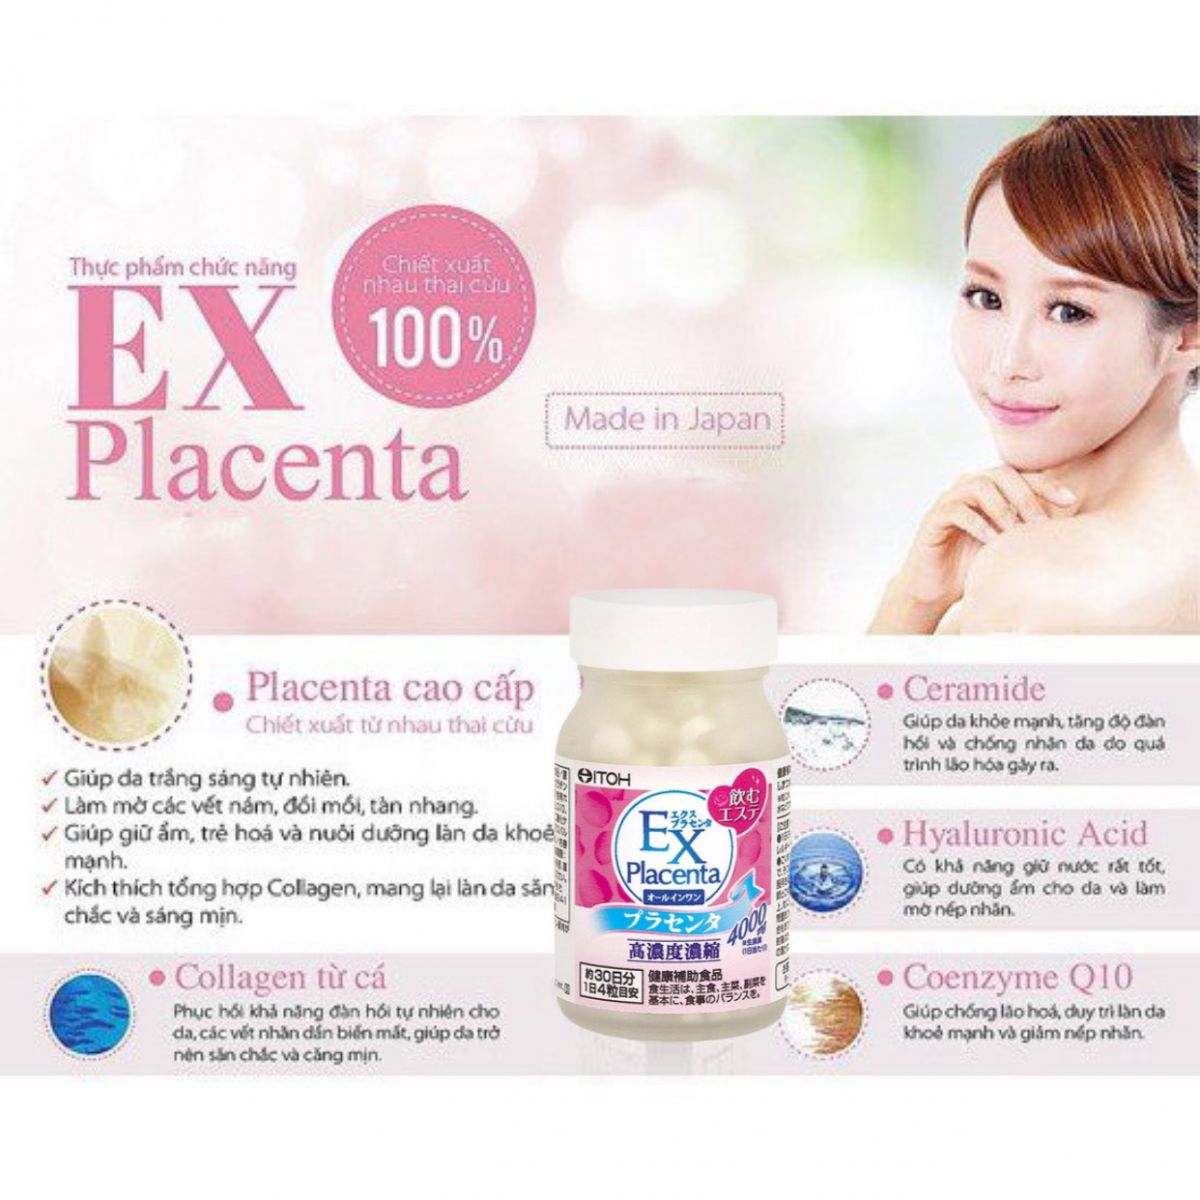 Viên Uống Nhau Thai Cừu ITOH EX Placenta hỗ trợ giữ ẩm cho da, giúp làm đẹp da, da trở nên mềm mại, mịn màng hơn